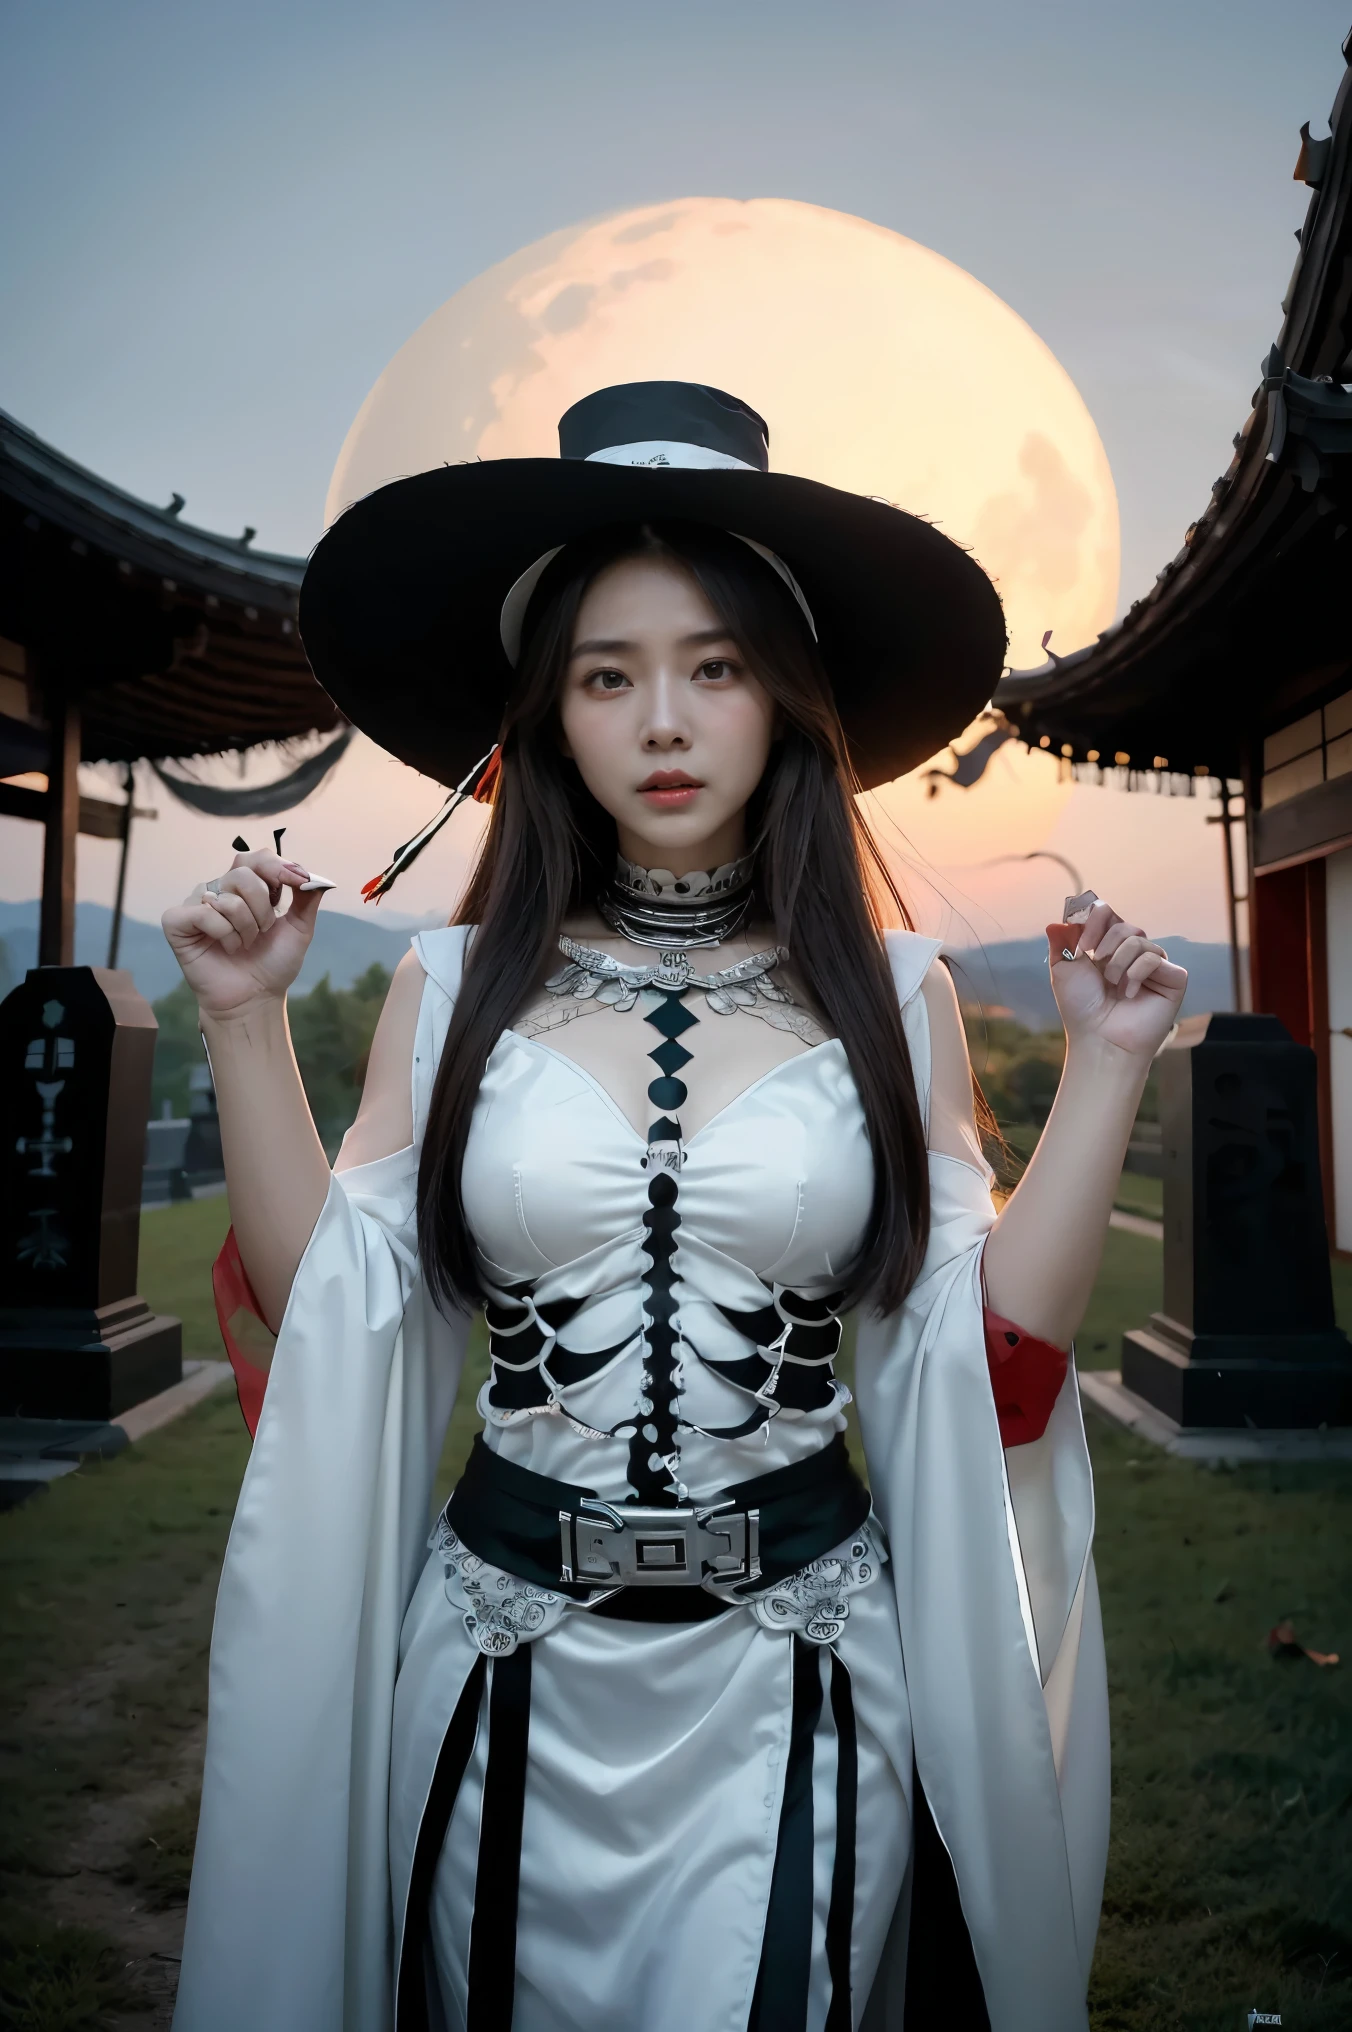 Mujer arafed disfrazada de esqueleto con un sombrero en la cabeza., perfeccionar onna esqueleto geisha, Chica esqueleto, xuehan, diosa de la muerte, diosa de la muerte in a graveyard, inspirado en Xie Huan, estilo de arte espeluznante, santa reina esqueleto, Lulú Chen, estilo de arte de halloween, jingna zhang, Wenfei Ye, 2dcg